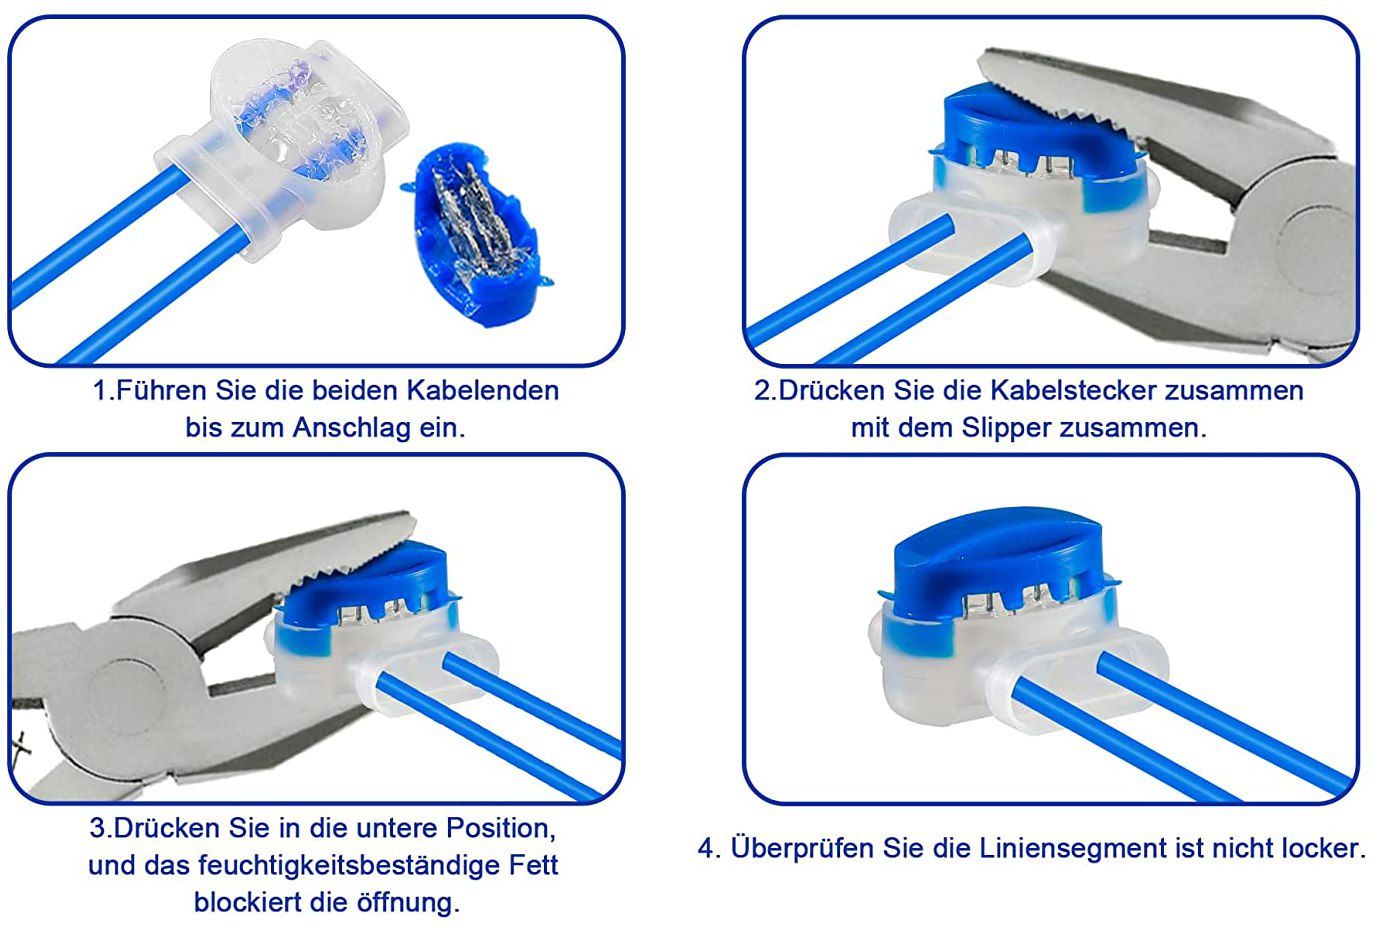 20x Lebexy Kabelverbinder für Mähroboter für 5,49€   Prime